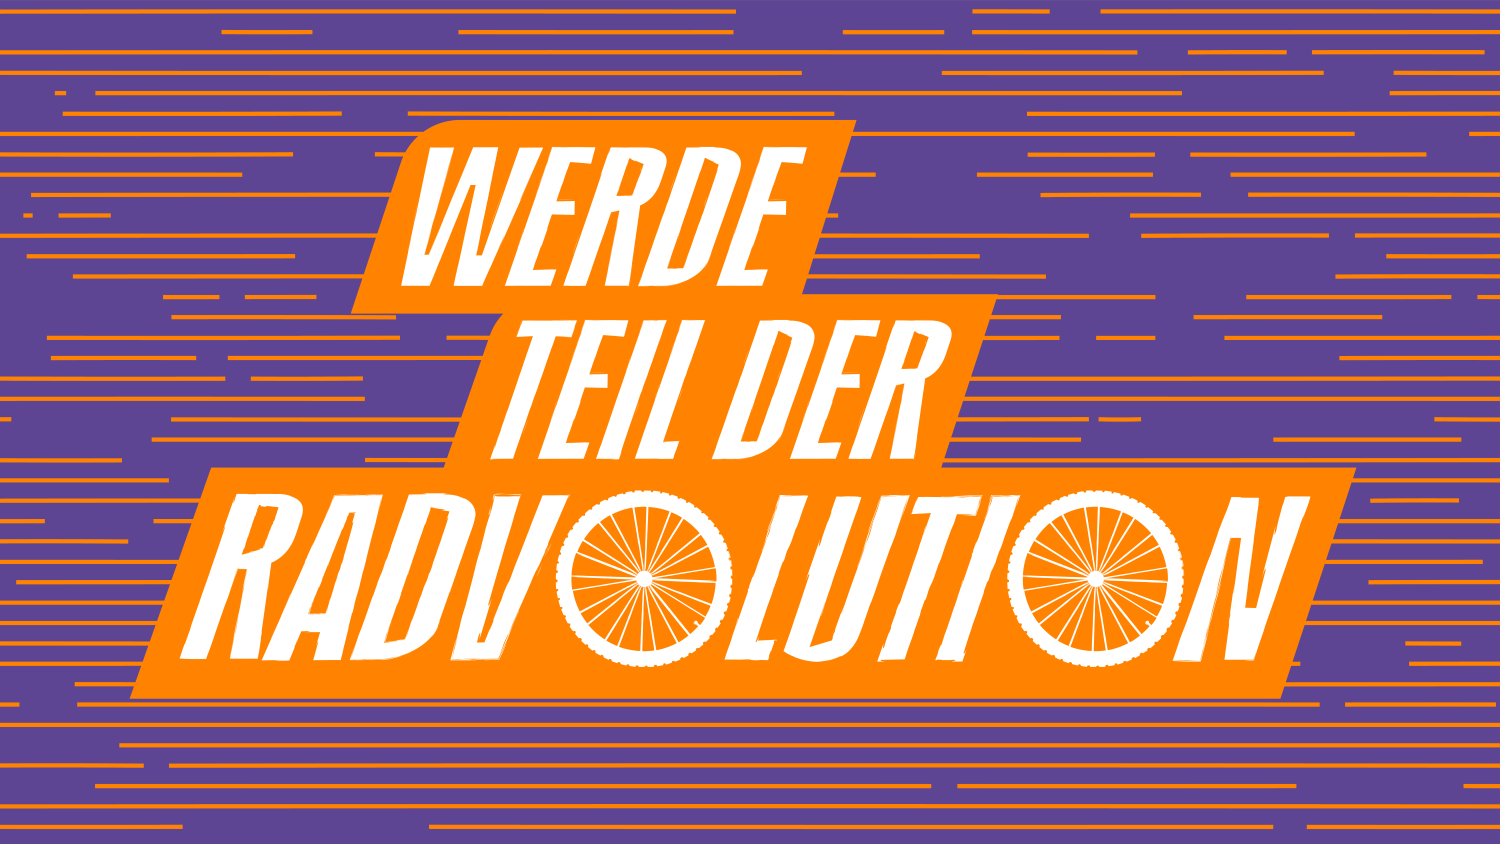 Schriftzug "Werde Teil der Radvolution" in orange auf lila Hintergrund